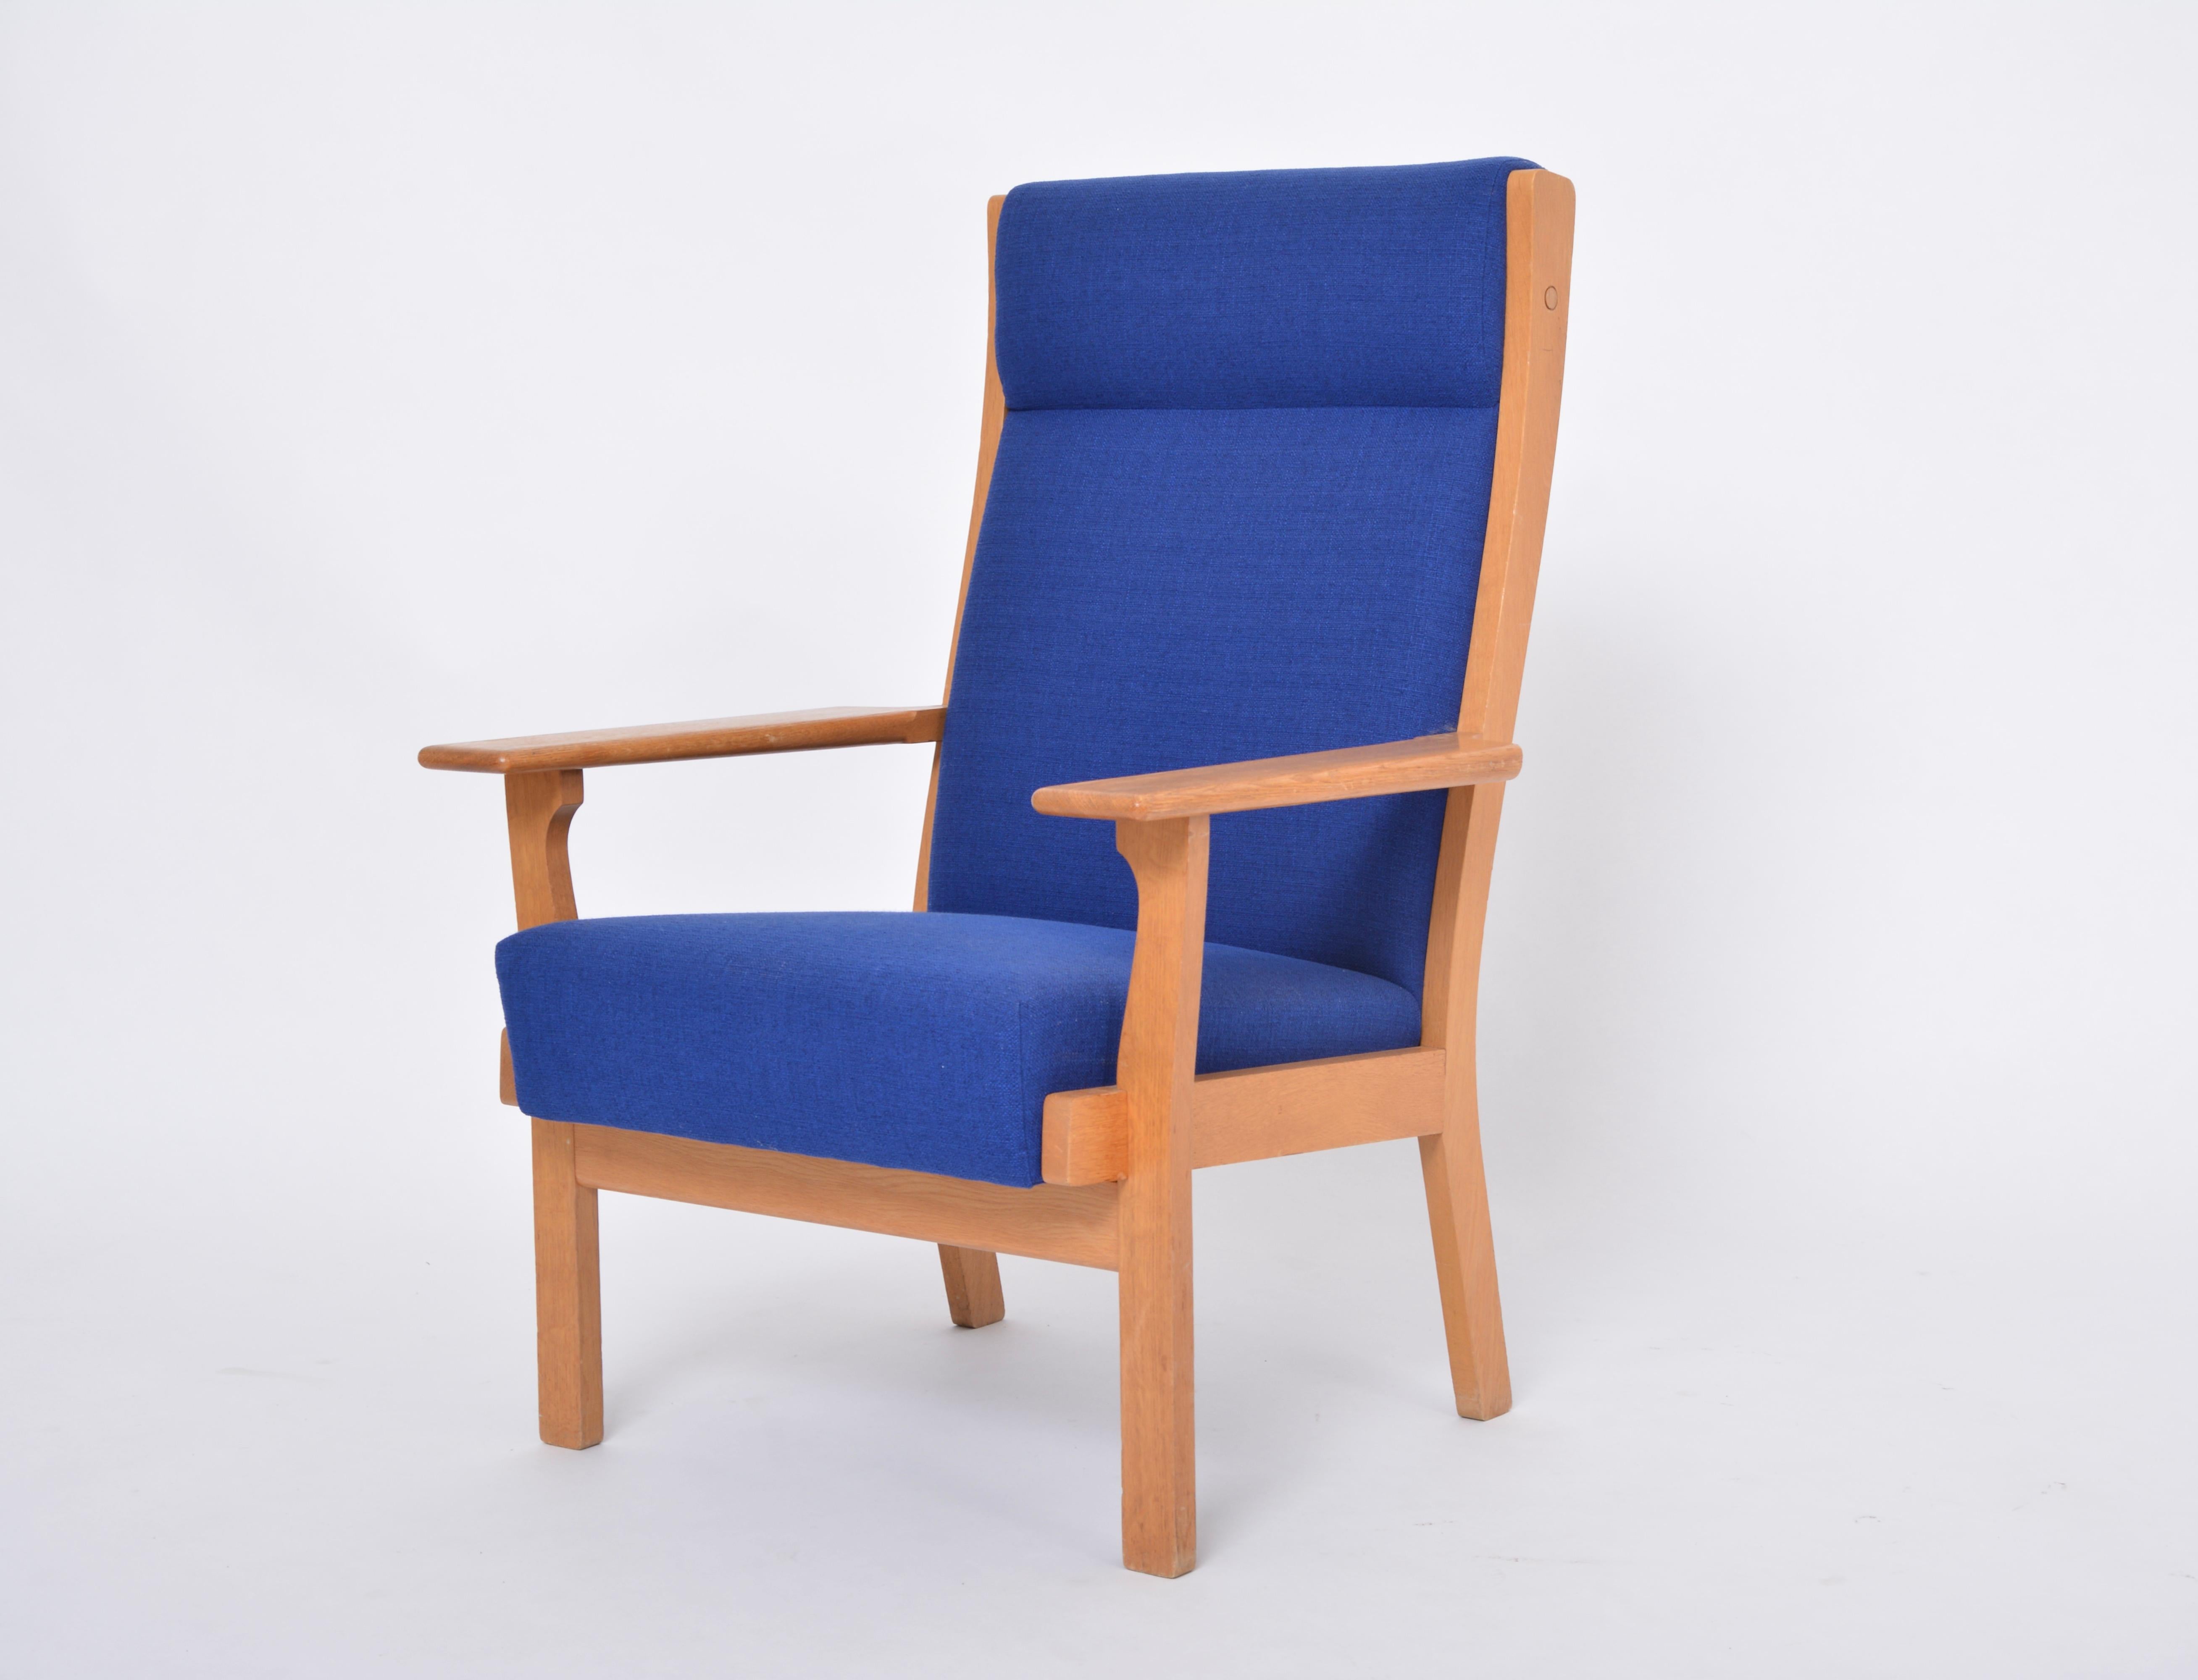 Chaise GE 181 danoise moderne du milieu du siècle, retapissée, de Hans Wegner pour GETAMA

Ce fauteuil (modèle GE 181 A) a été conçu par Hans Wegner et produit avec un savoir-faire exceptionnel par la société danoise GETAMA. La chaise est en chêne